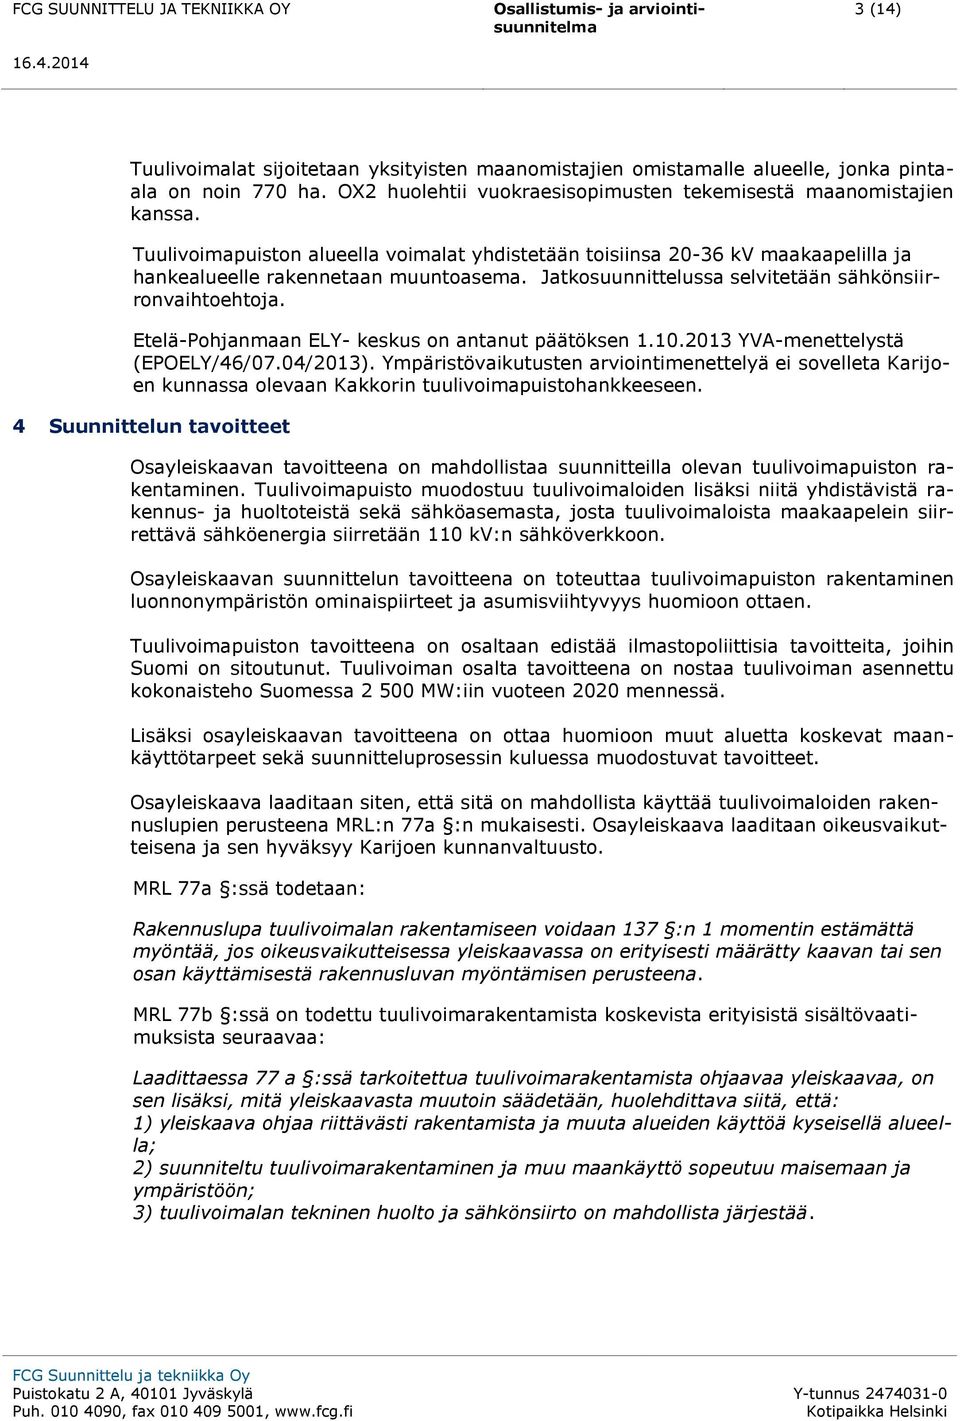 Etelä-Pohjanmaan ELY- keskus on antanut päätöksen 1.10.2013 YVA-menettelystä (EPOELY/46/07.04/2013).